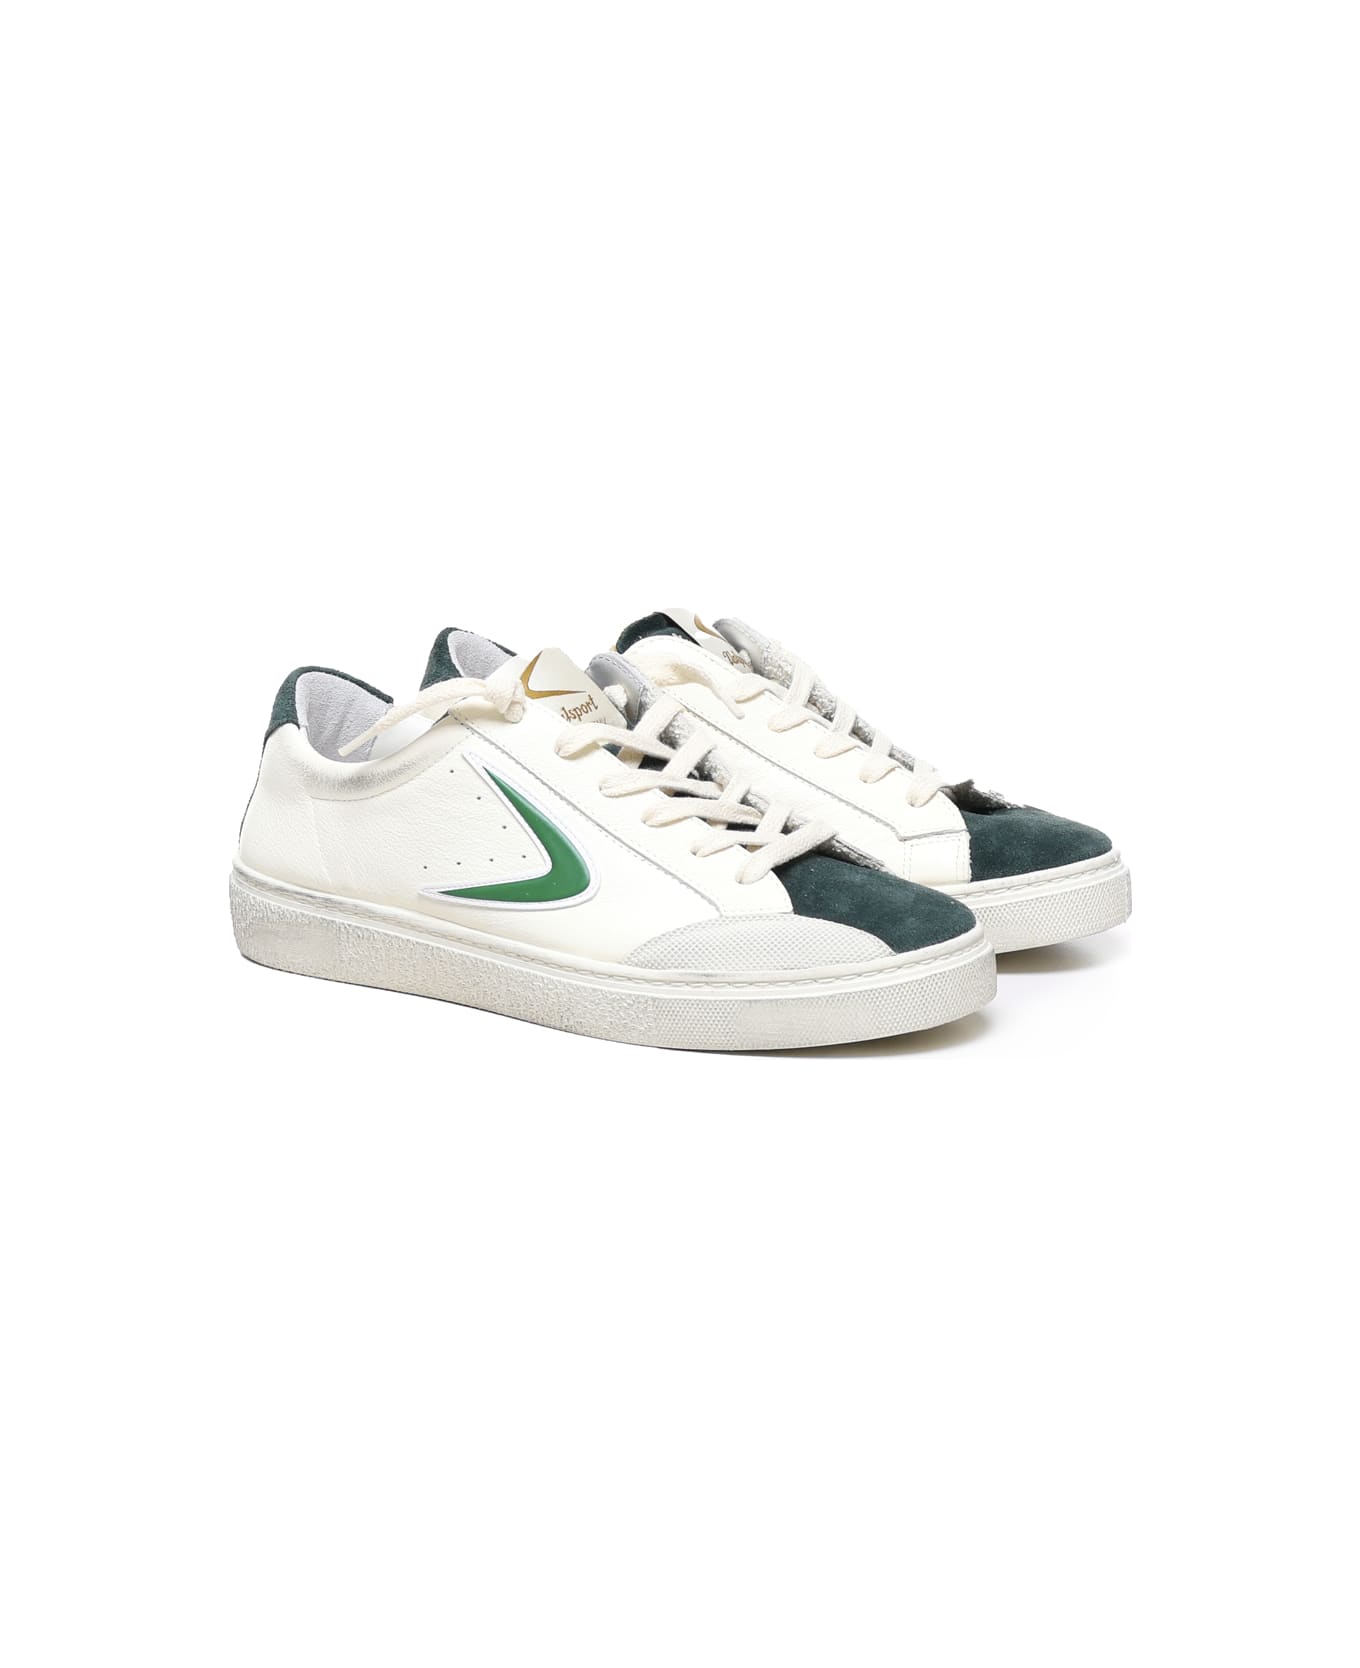 Valsport Ollie Goofy Sneakers - White, green スニーカー